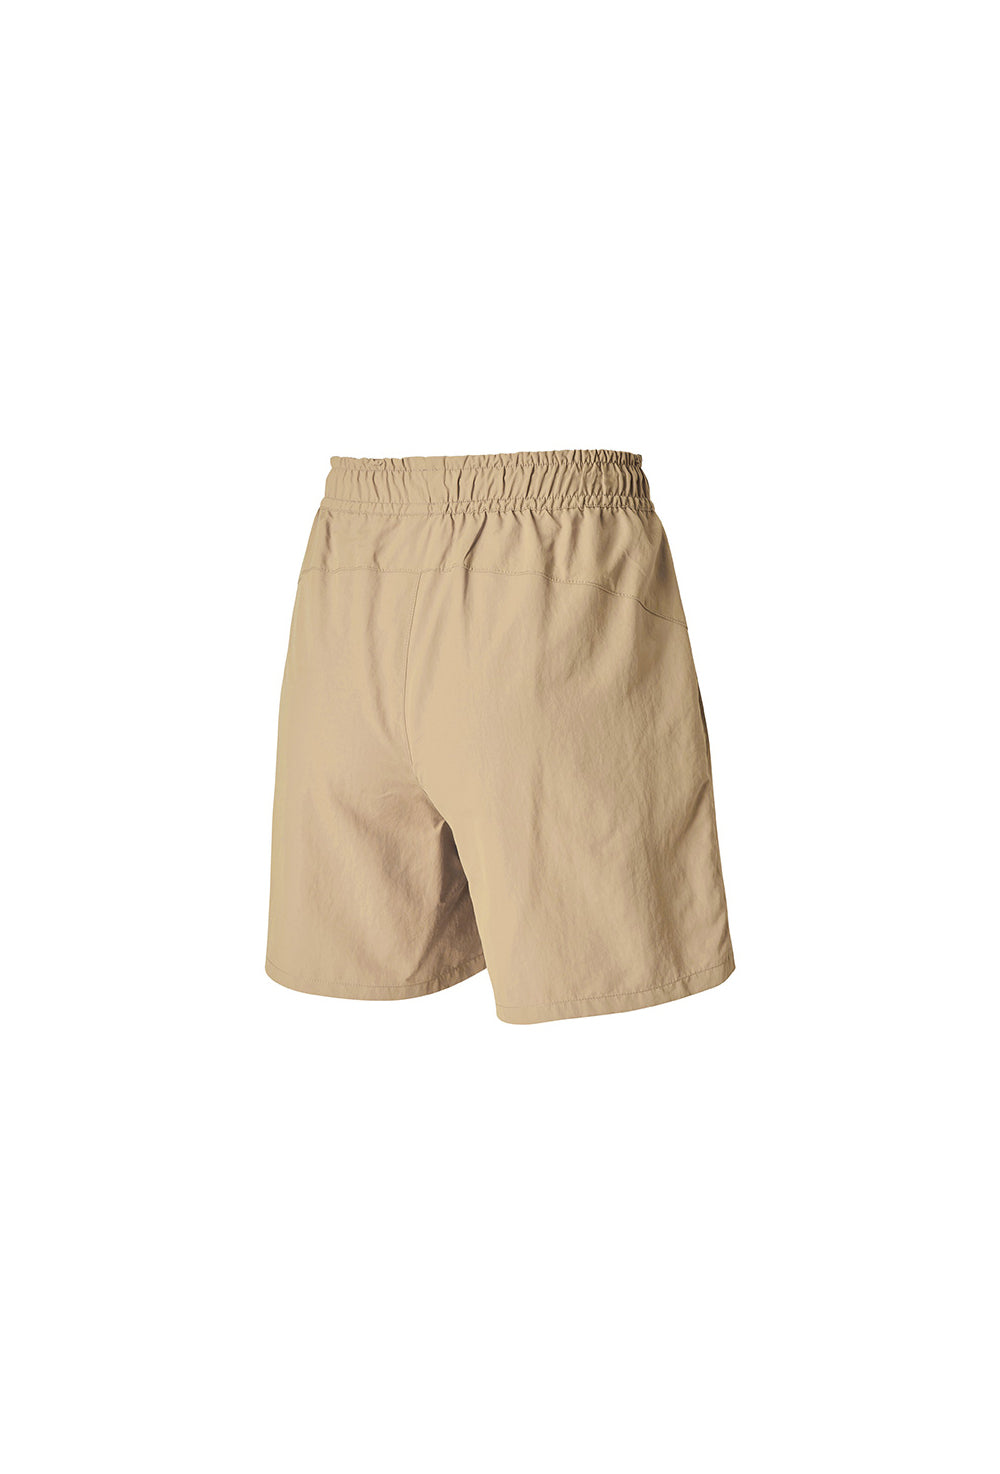 Basic Woven Half Shorts - Safari Sand (Clearance)